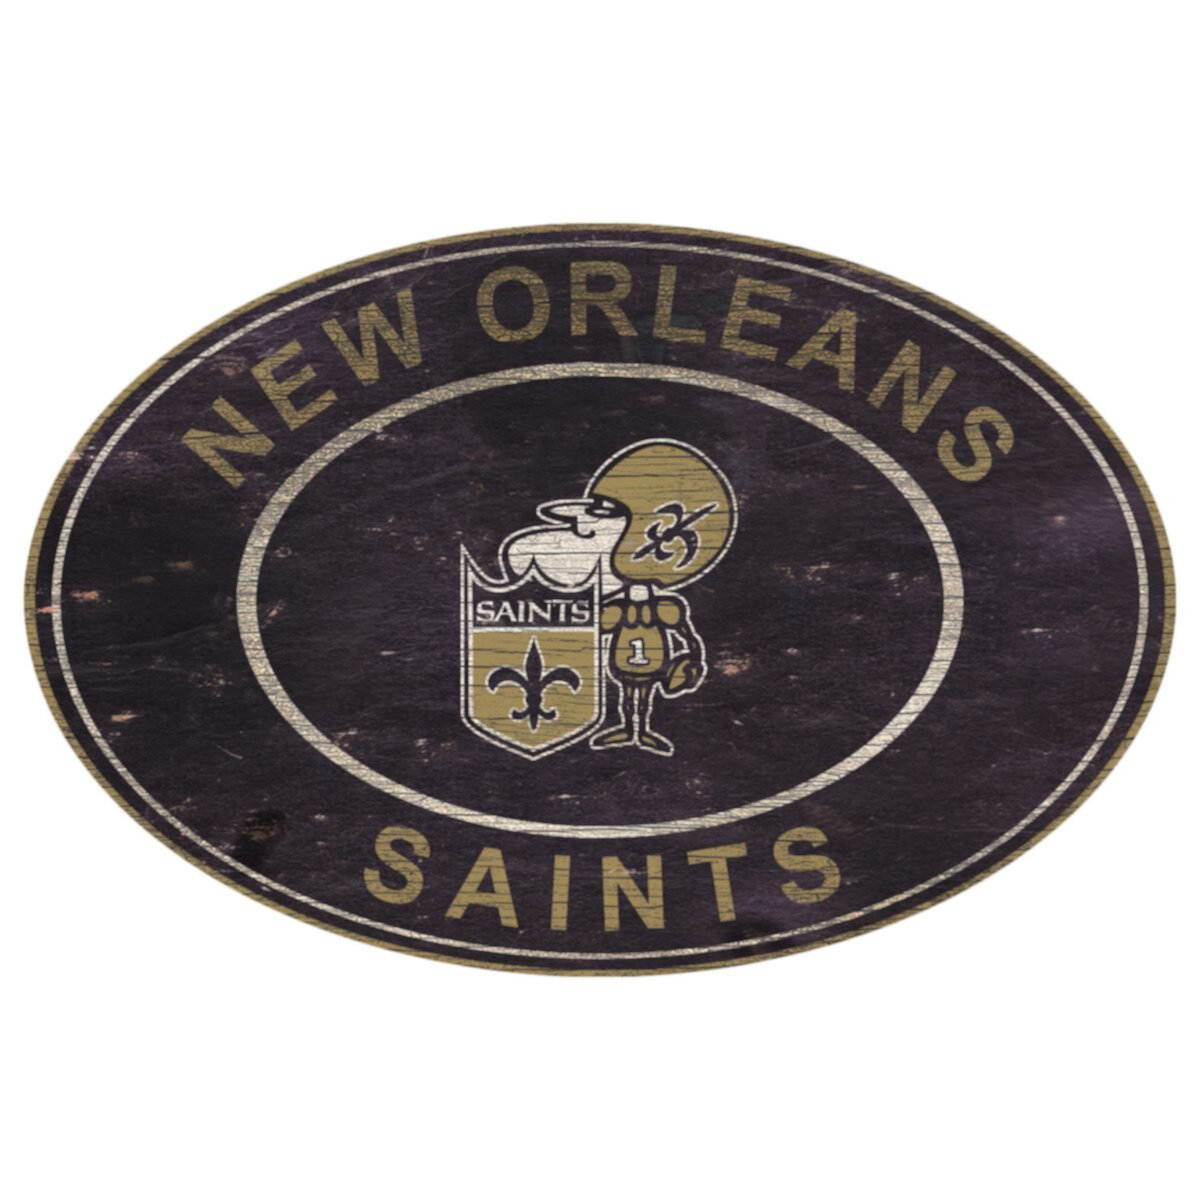 Овальный настенный знак New Orleans Saints Heritage Fan Creations